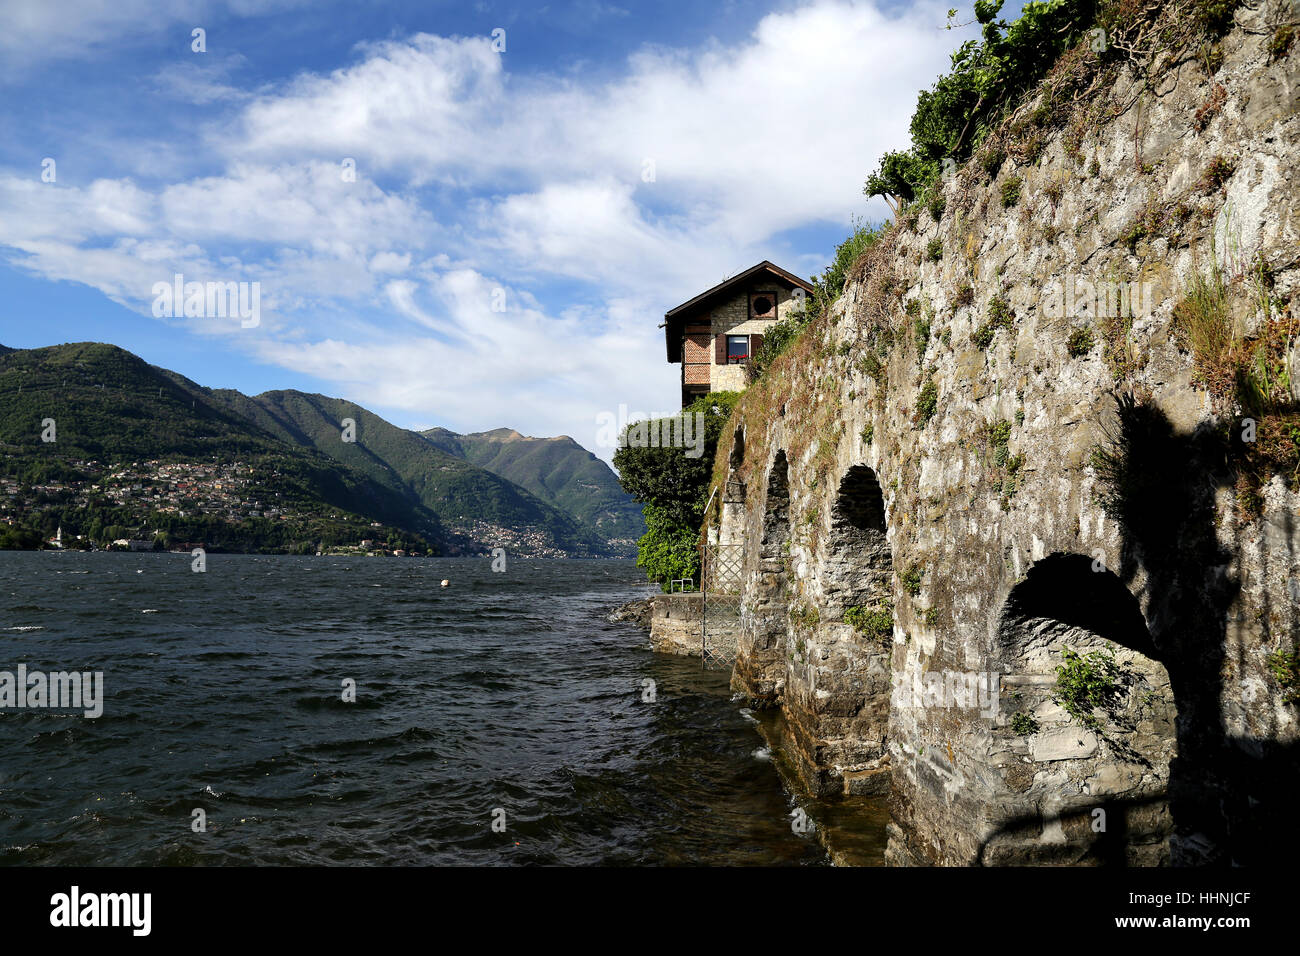 Lake Como Italy,italy,lake como, Stock Photo